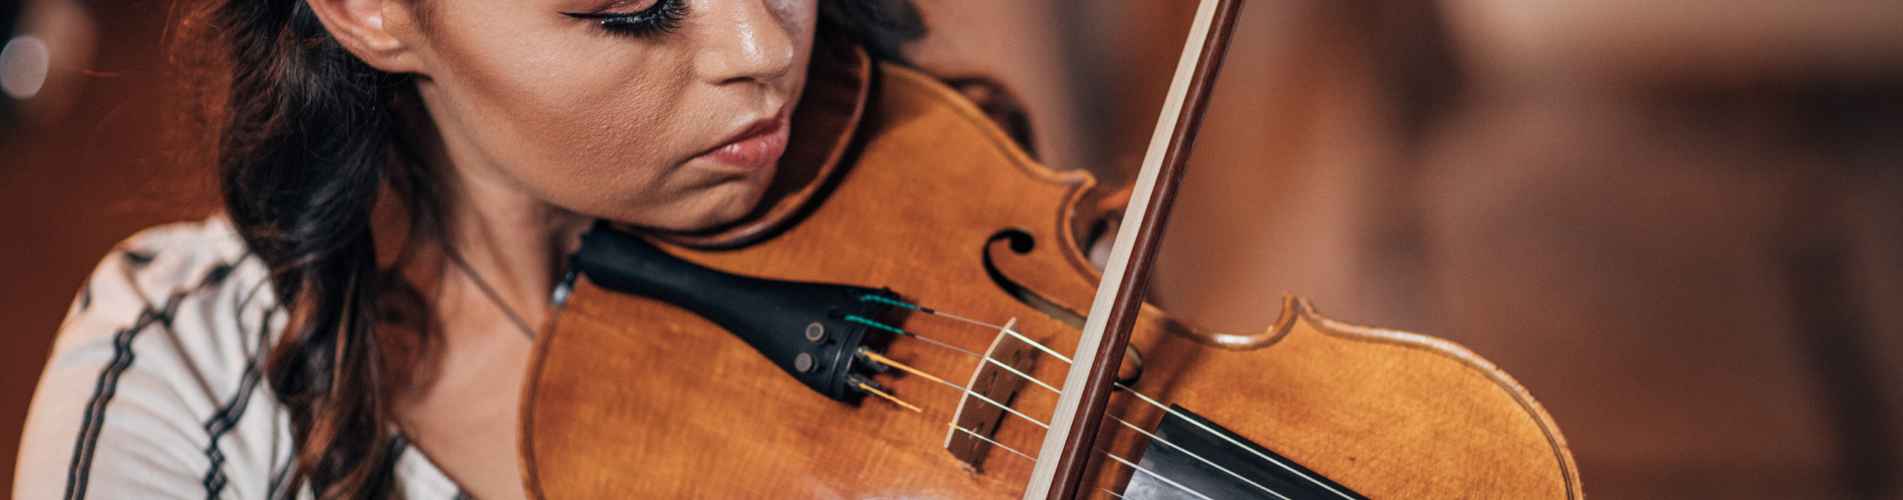 Comment accorder un violon facilement et parfaitement